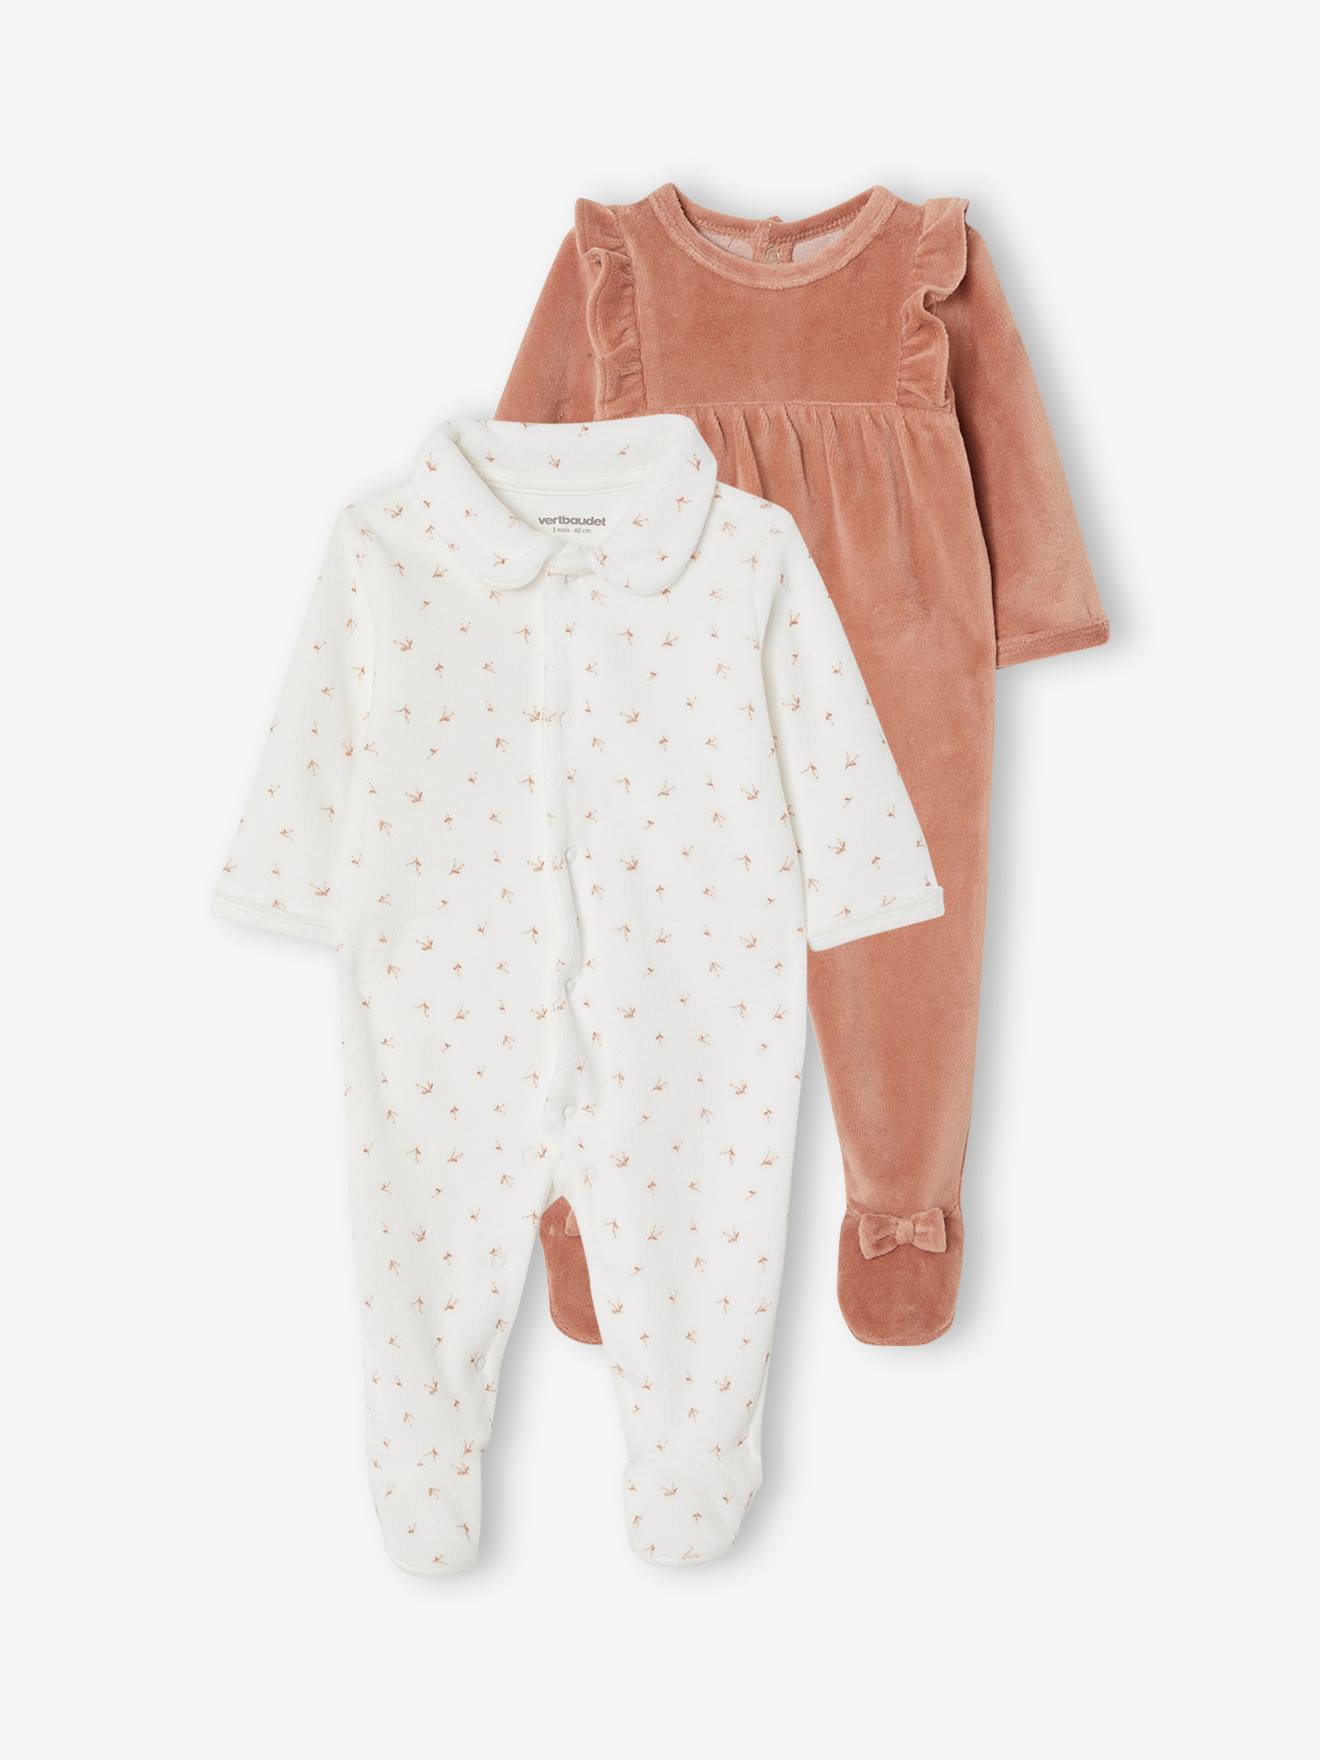 GAP Baby Schlafanzug Einteiler Overall Mädchen Junge Outlet-Ware UVP 34,95$ 